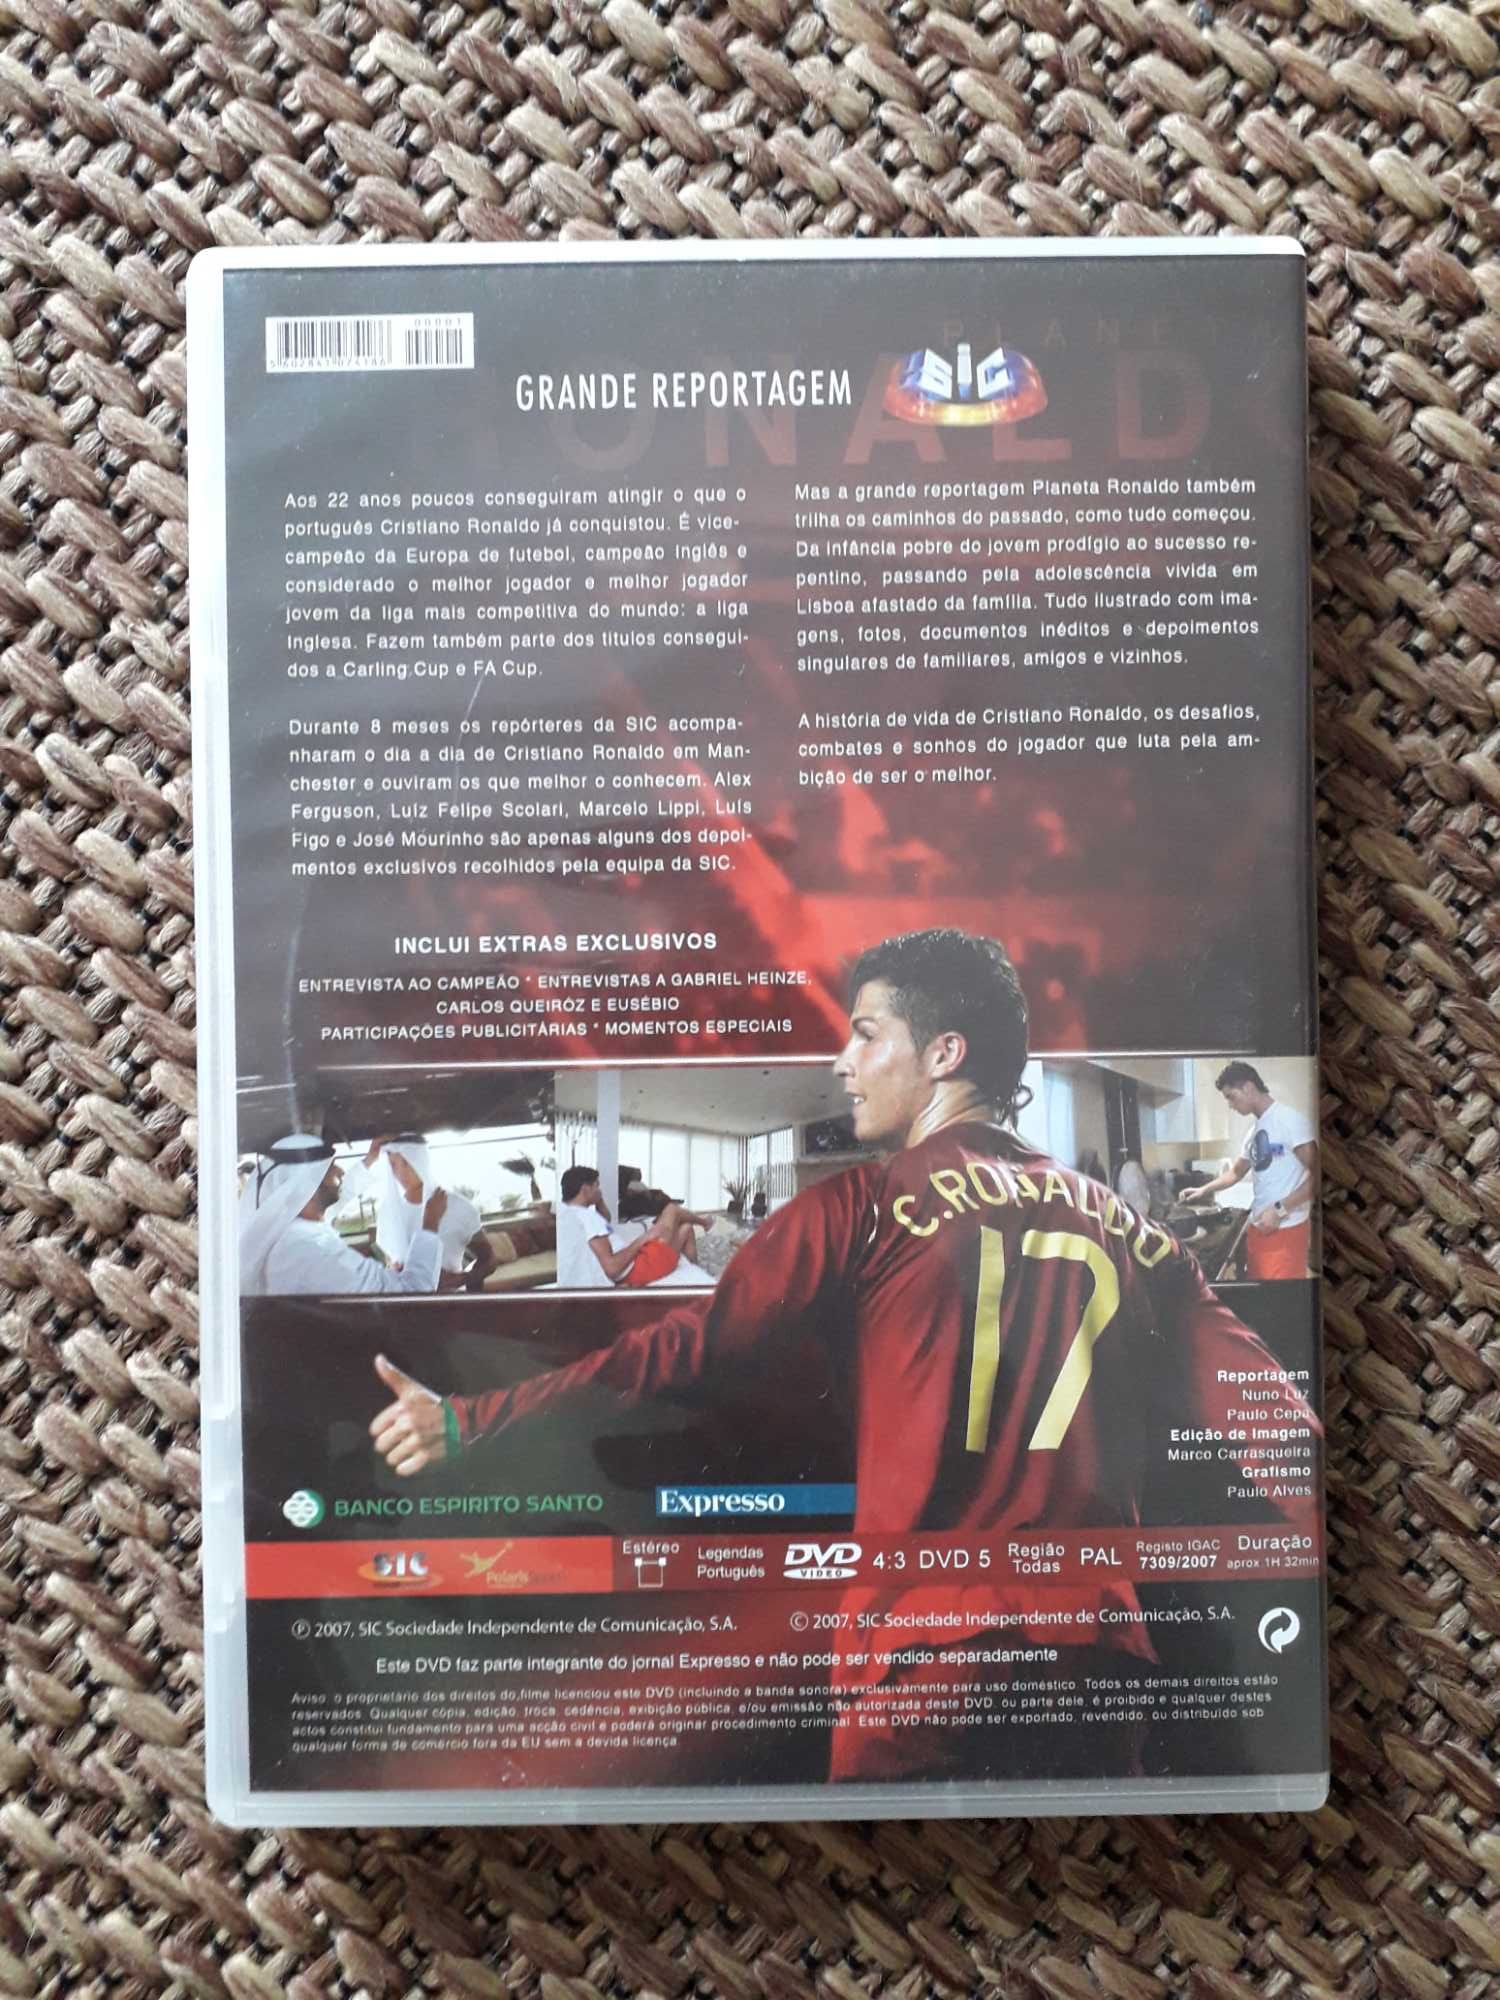 DVD "Planeta Ronaldo" com portes incluídos